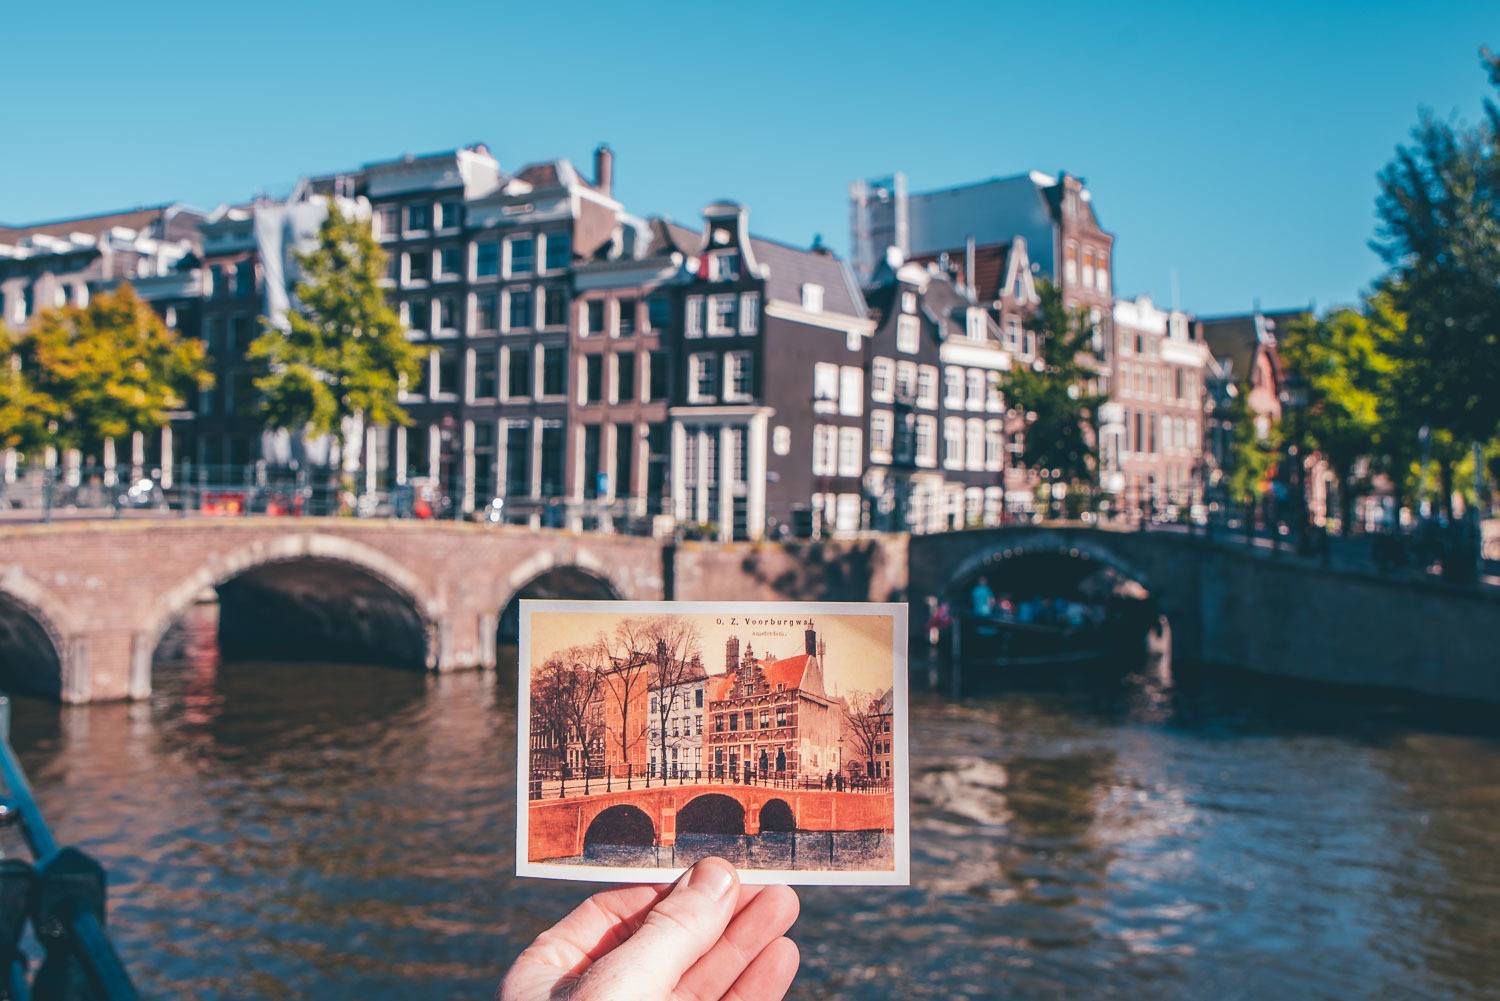 Jordaan - BEst airbnbs in Amsterdam